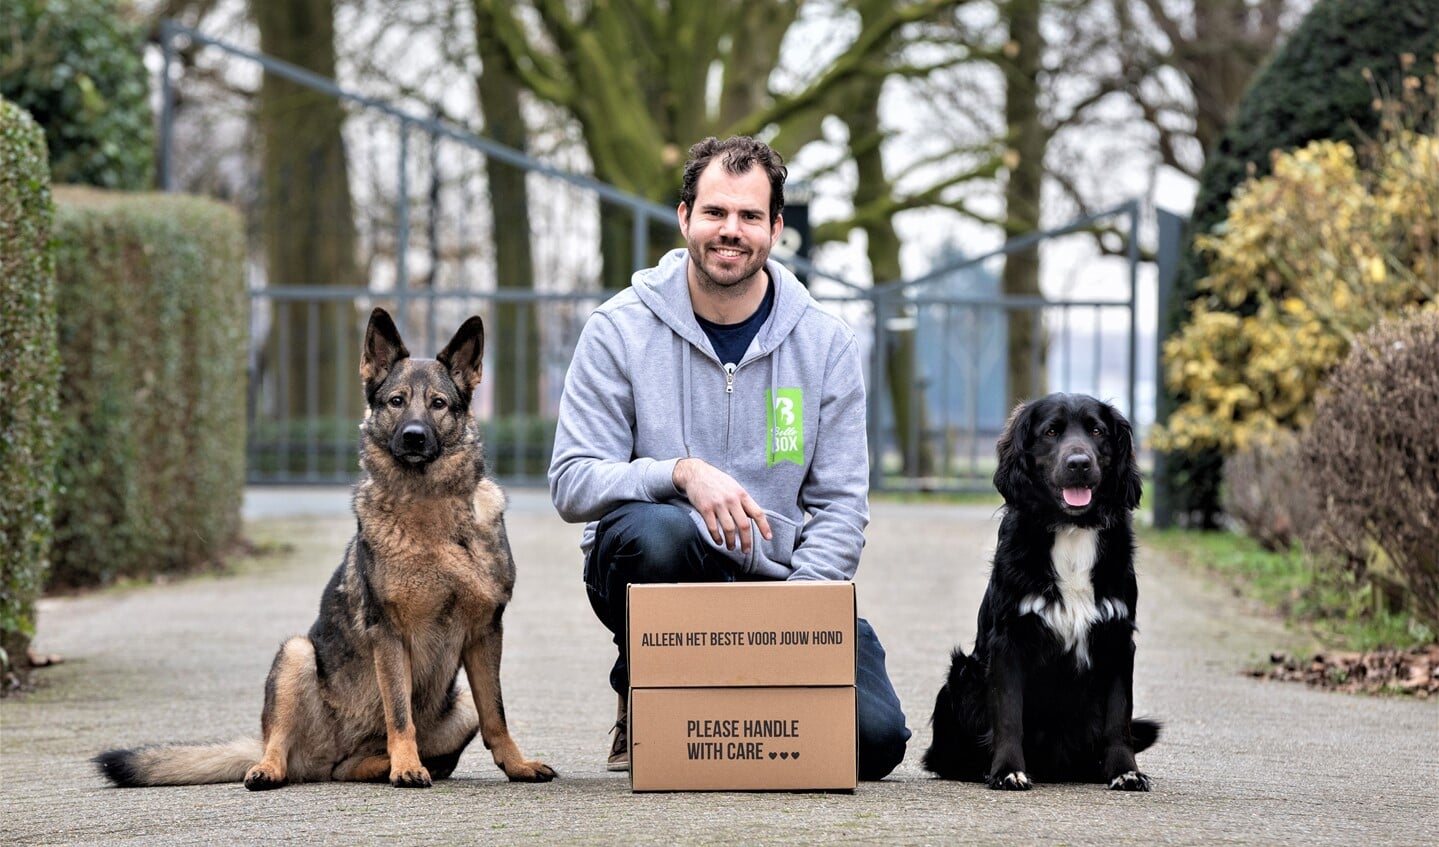 Jeffrey Tukker van Bellobox met zijn honden Kaya en Dave (foto: Marleen Verheul fotografie).